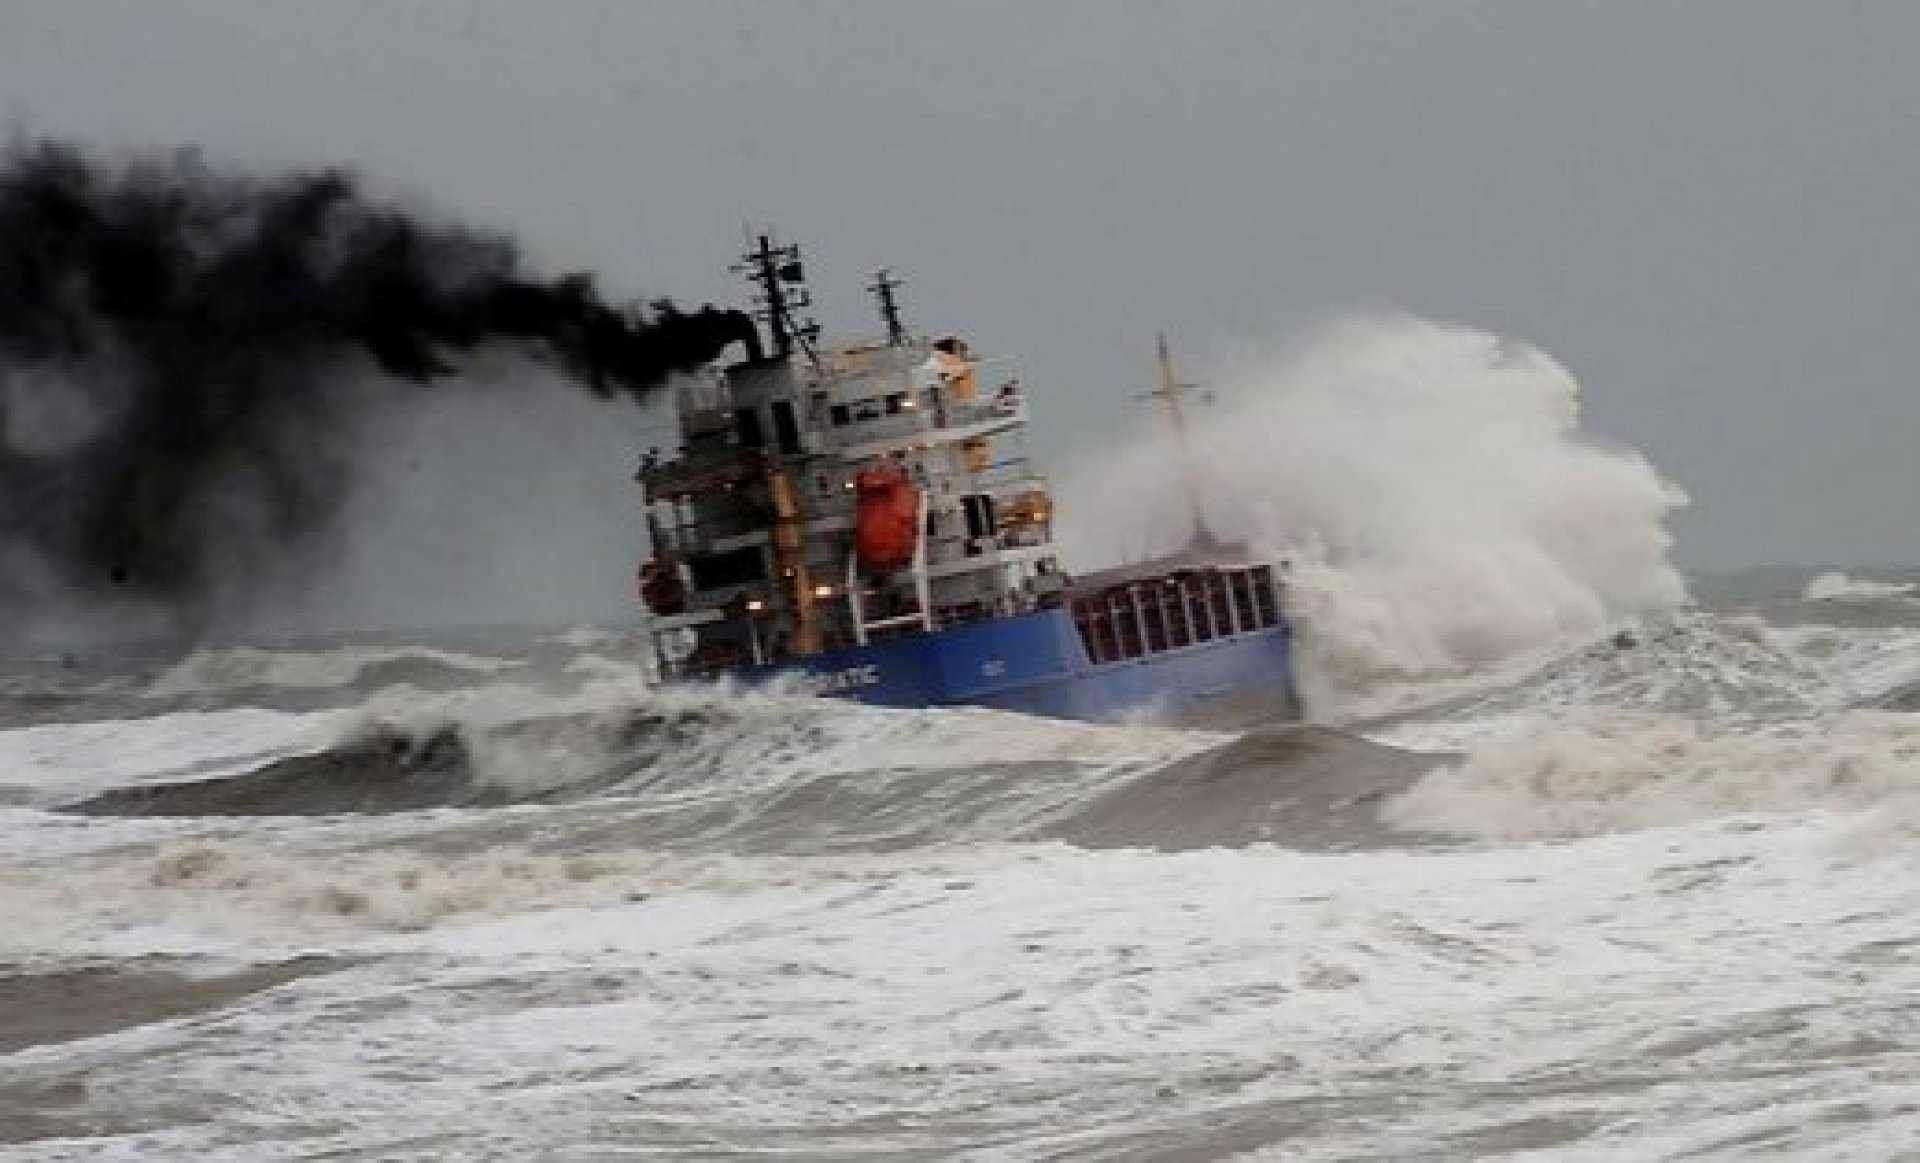 Помощь терпящему бедствие судну. Затонувшее судно в Керченском проливе. Катастрофа в Керченском проливе 11 ноября 2007 г. Крушение танкер Волгонефть 139. Судно в шторм.